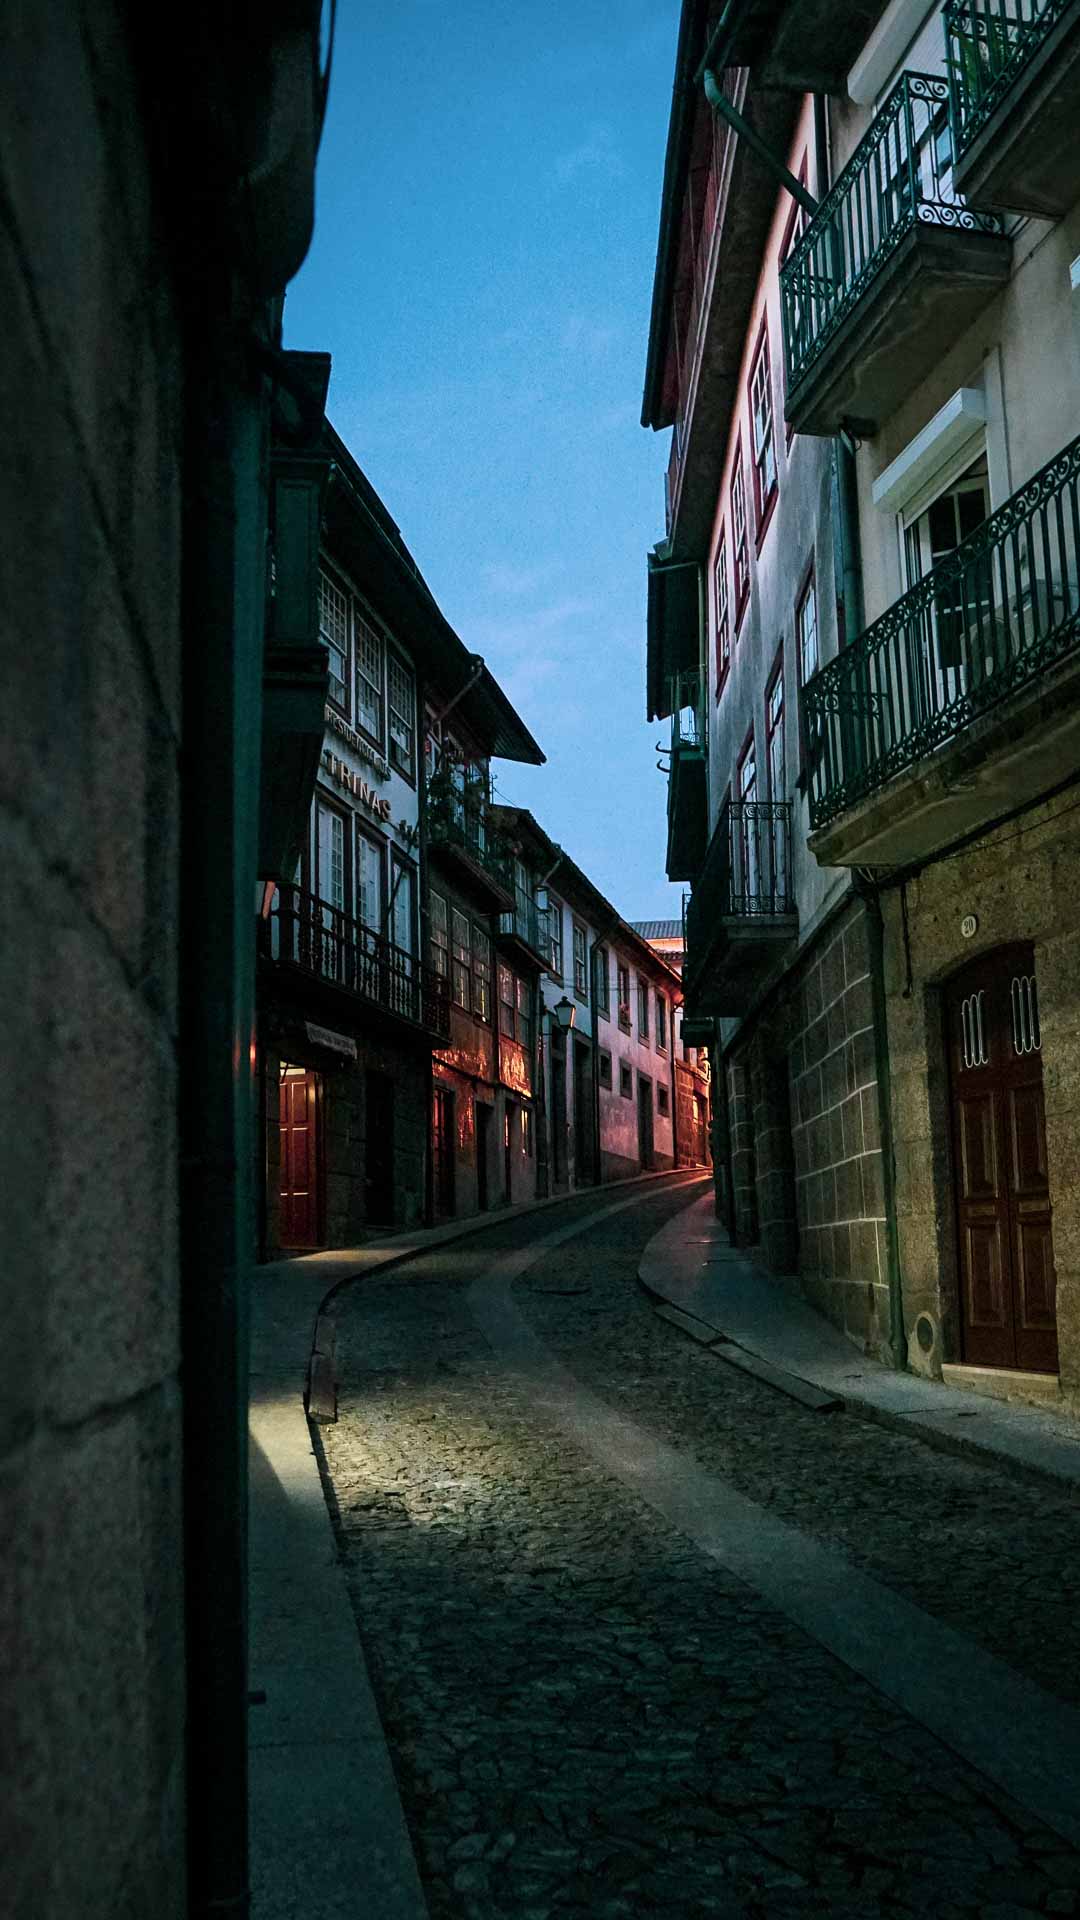 Guimaraes Travel Guide Image of street alleyway at night